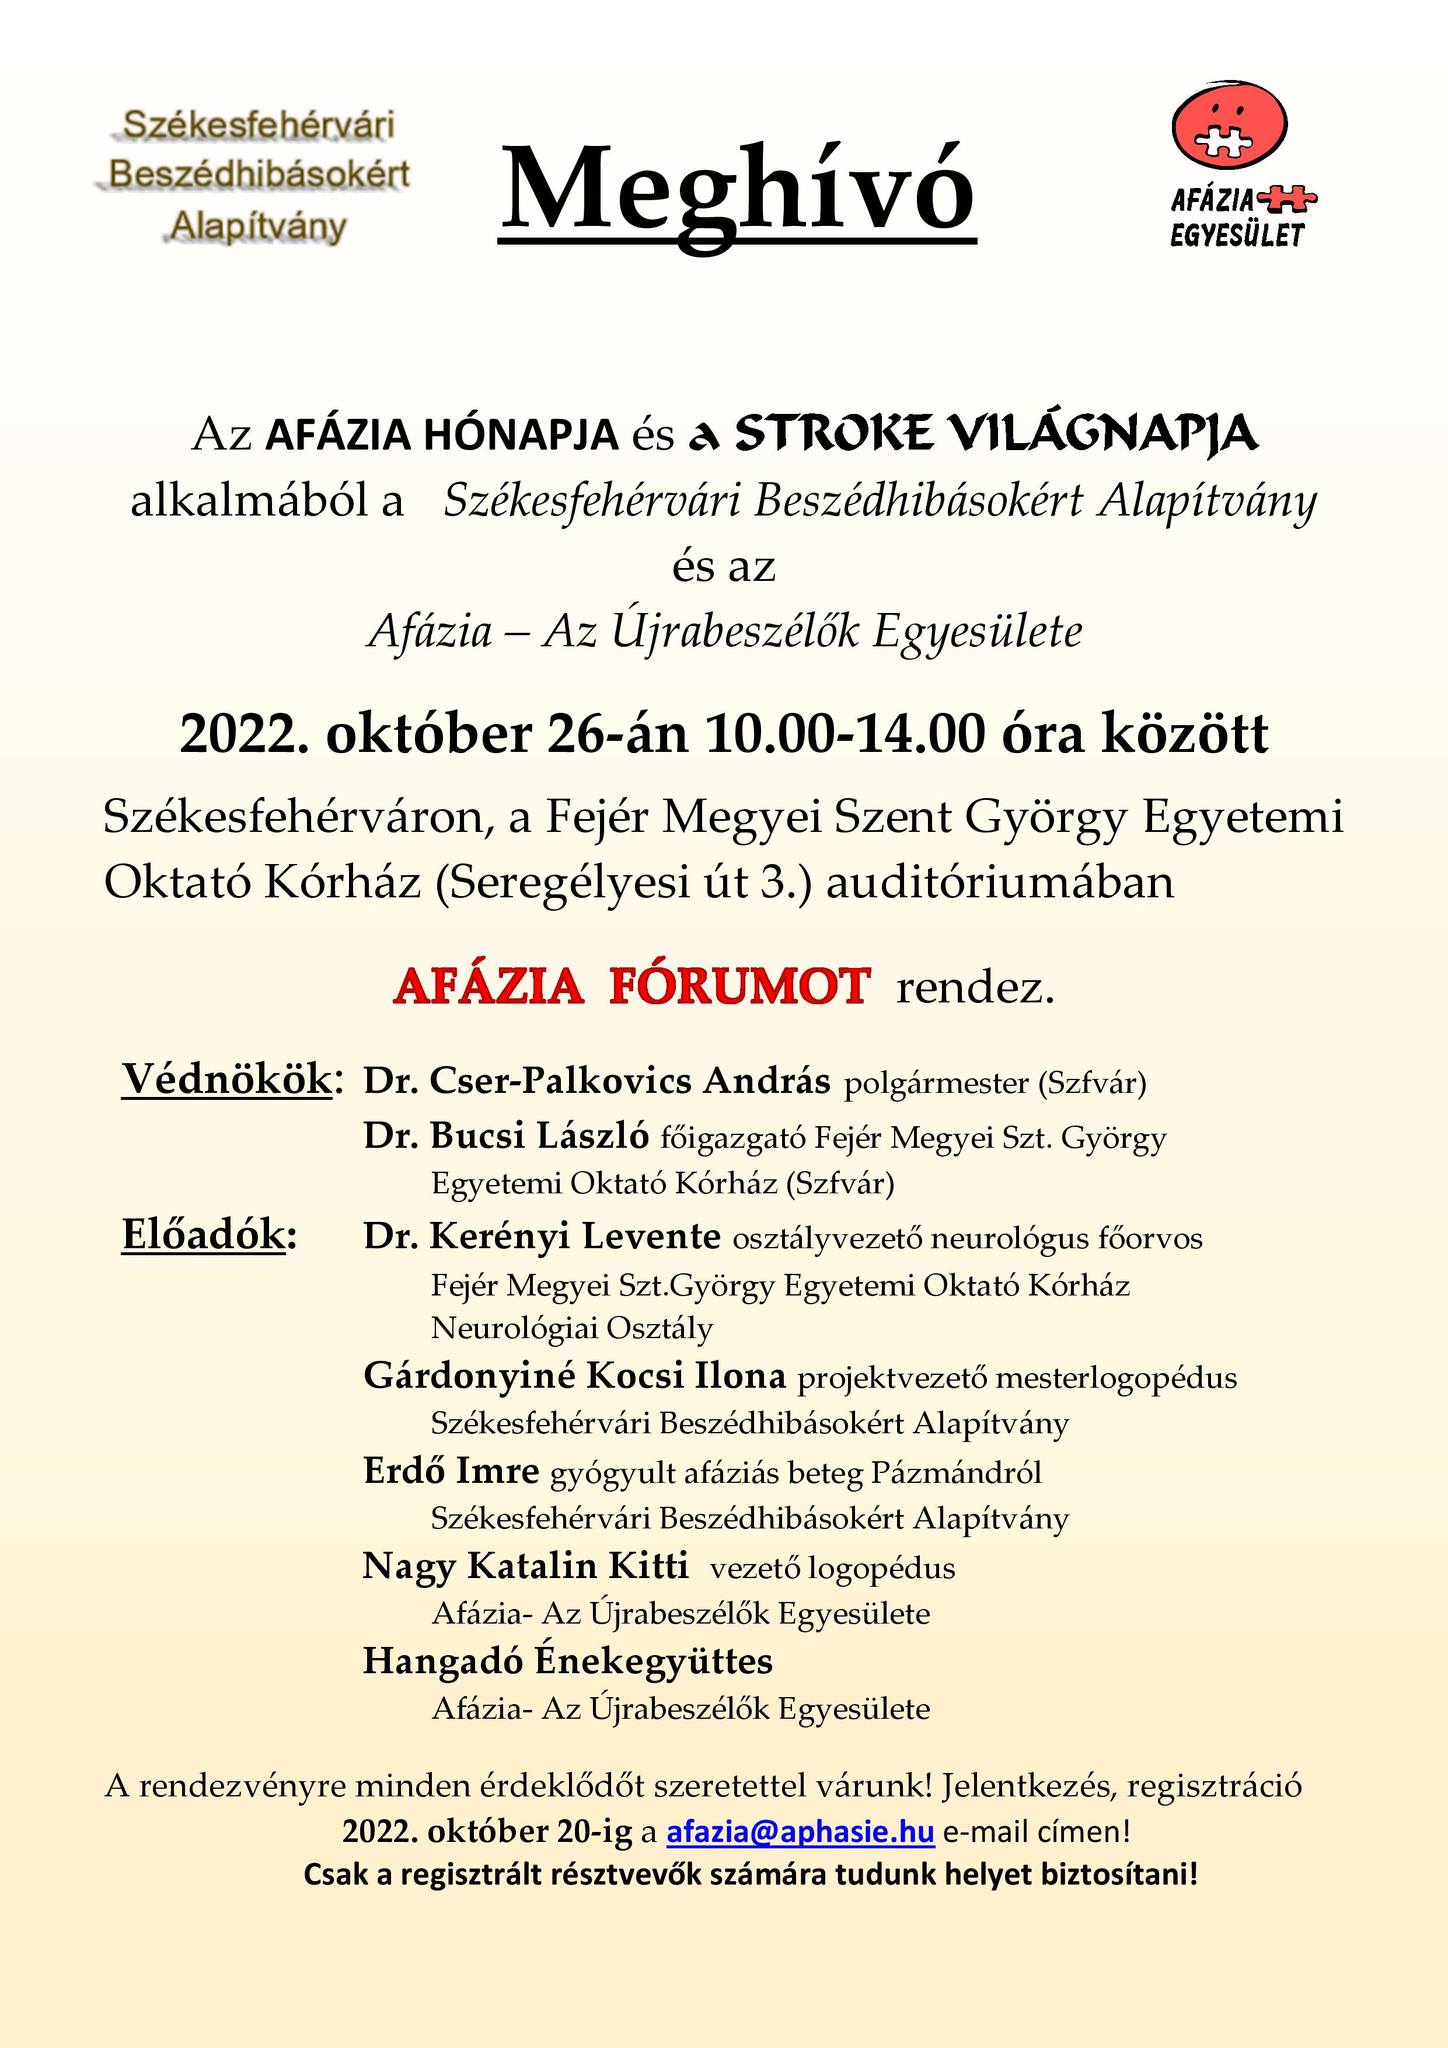 Afázia fórum október 26-án a székesfehérvári Szent György Kórházban